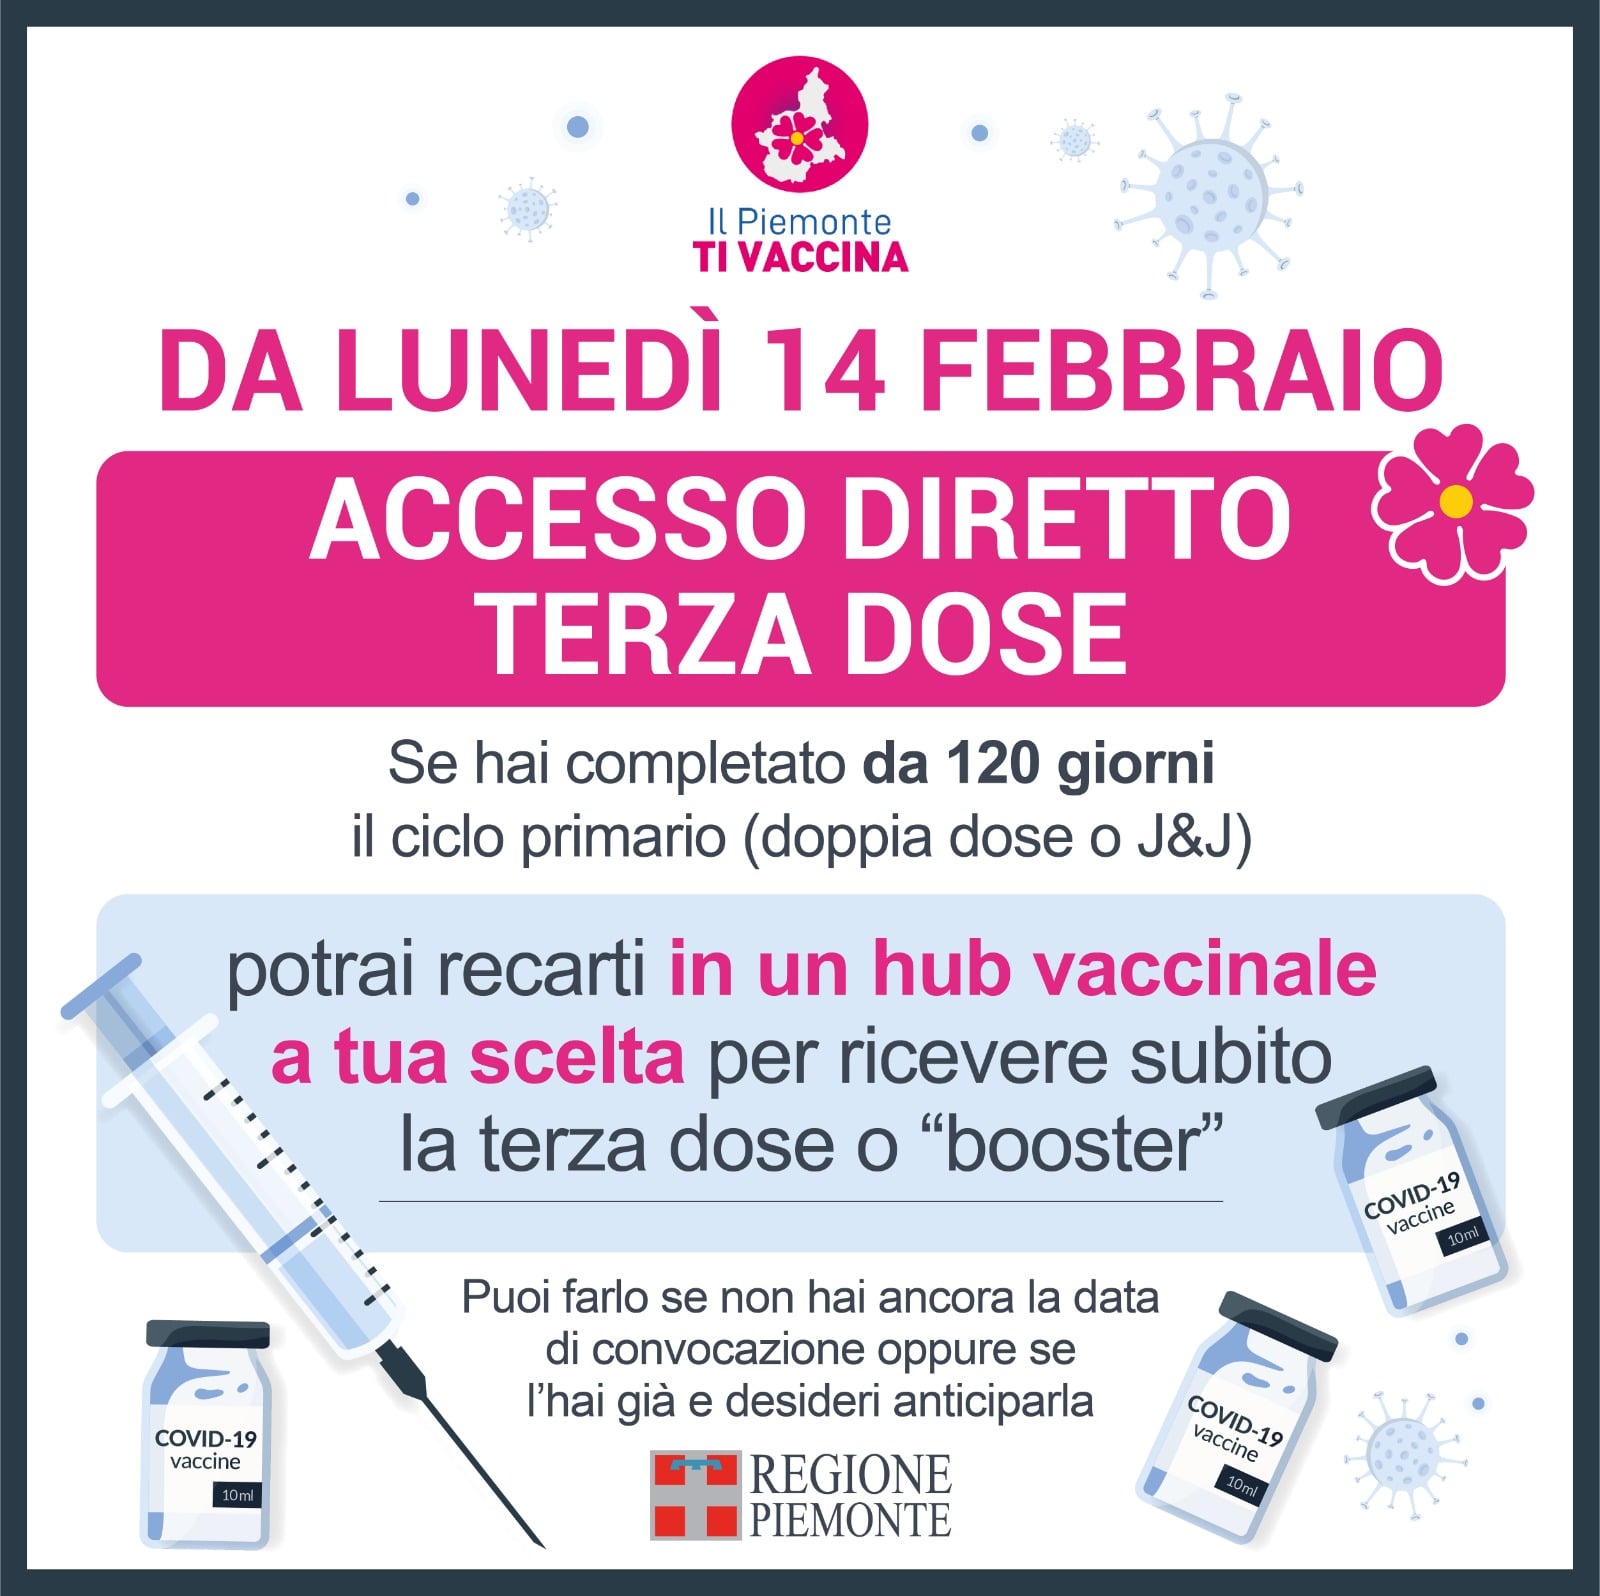 Lunedì 14 febbraio, accesso diretto per la terza dose in Piemonte